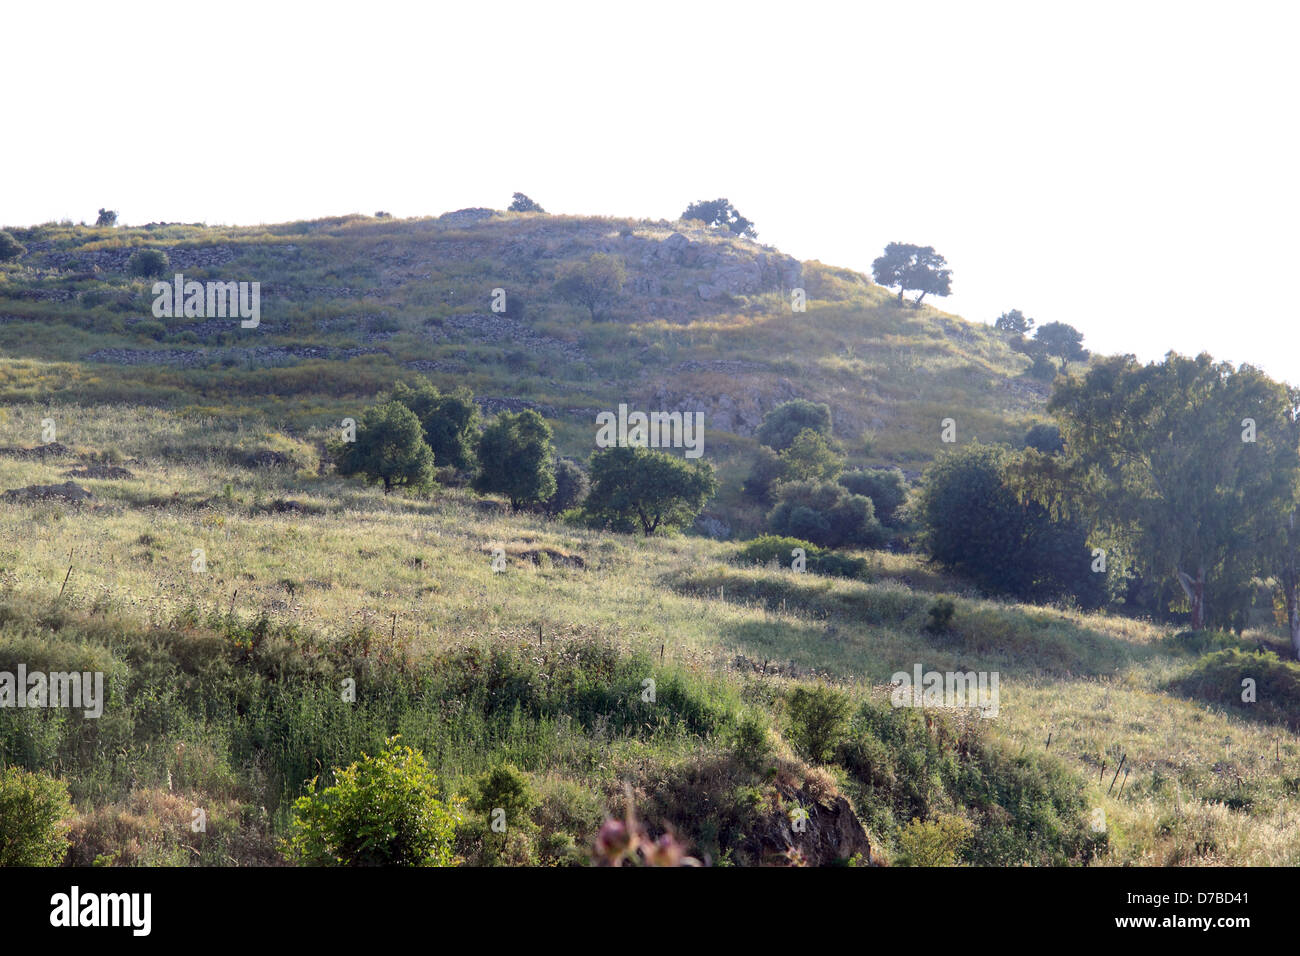 Le corna di Hattin che si affaccia sulla pianura di Hattin in Bassa Galilea Foto Stock